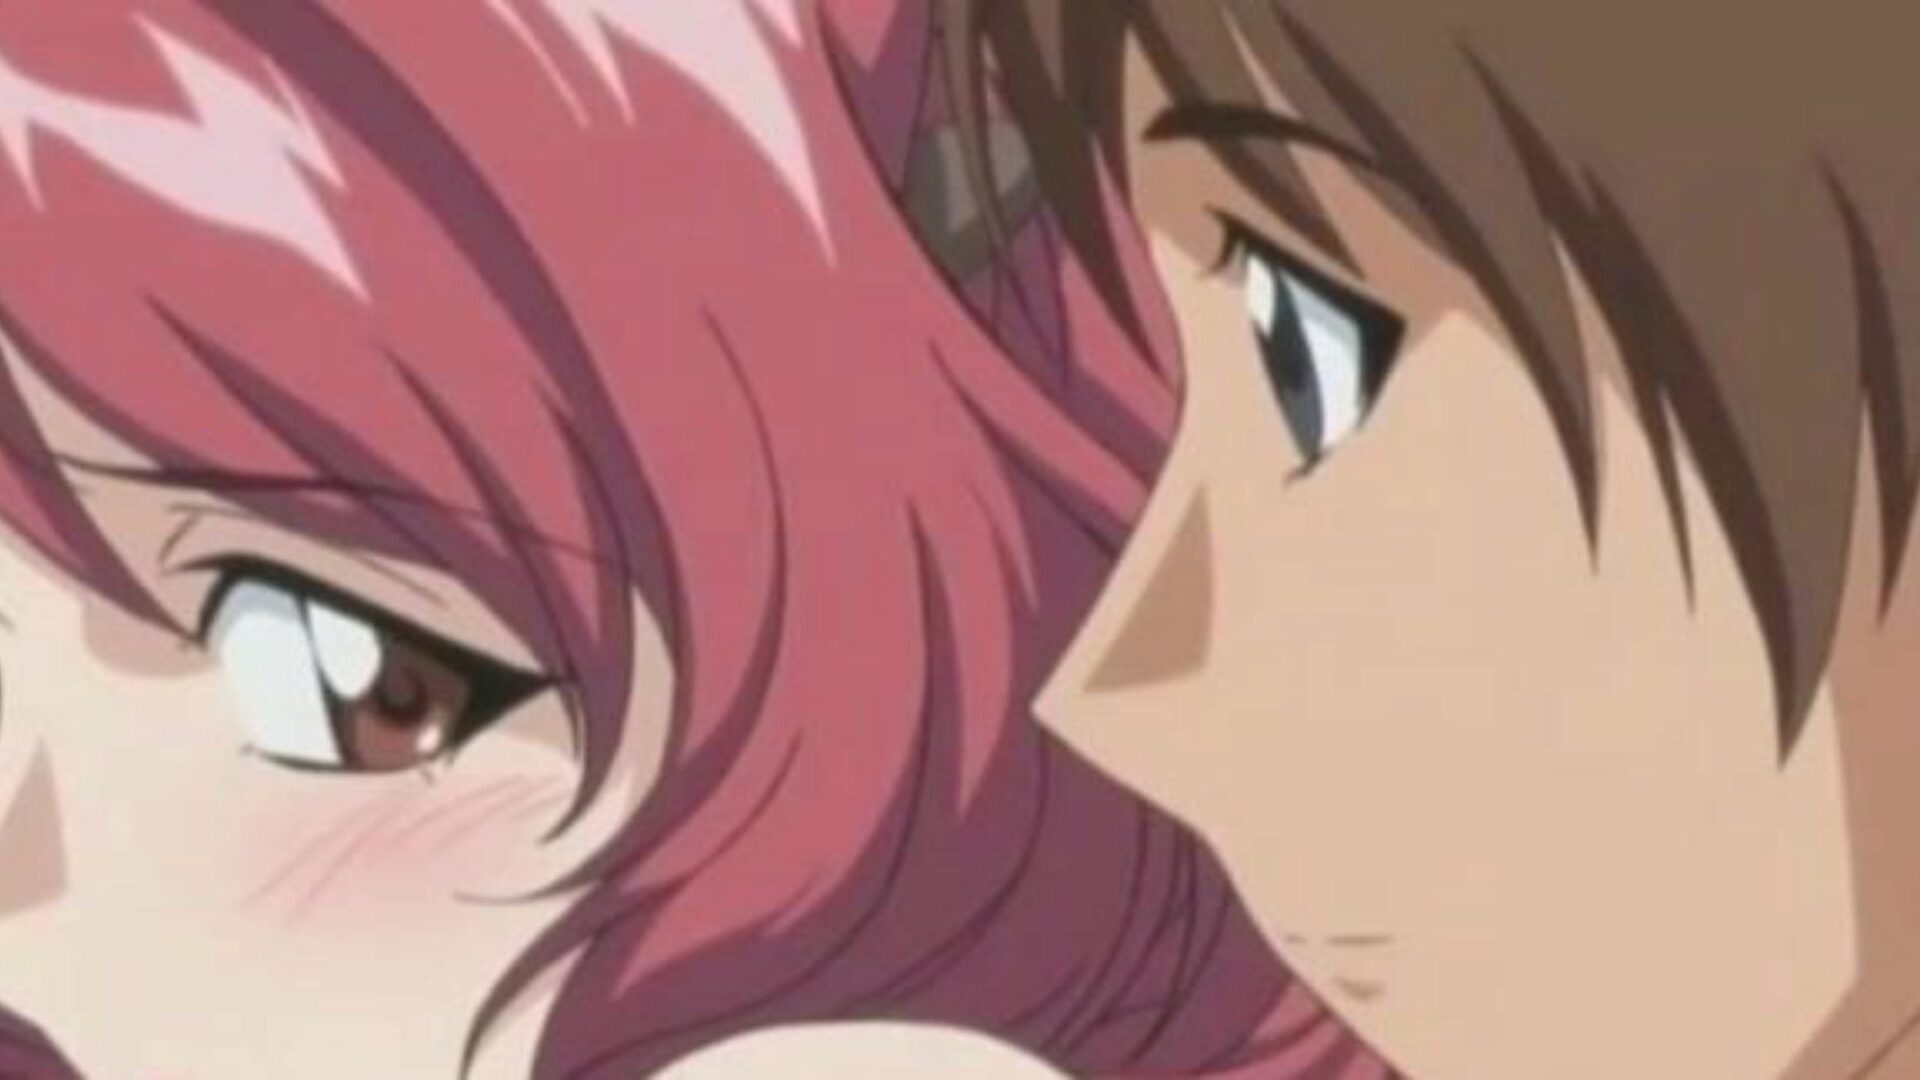 rakastaja lain 02 - hotwife aviomiehensä hänen stepbro | anime sukupuoli sensuroimaton